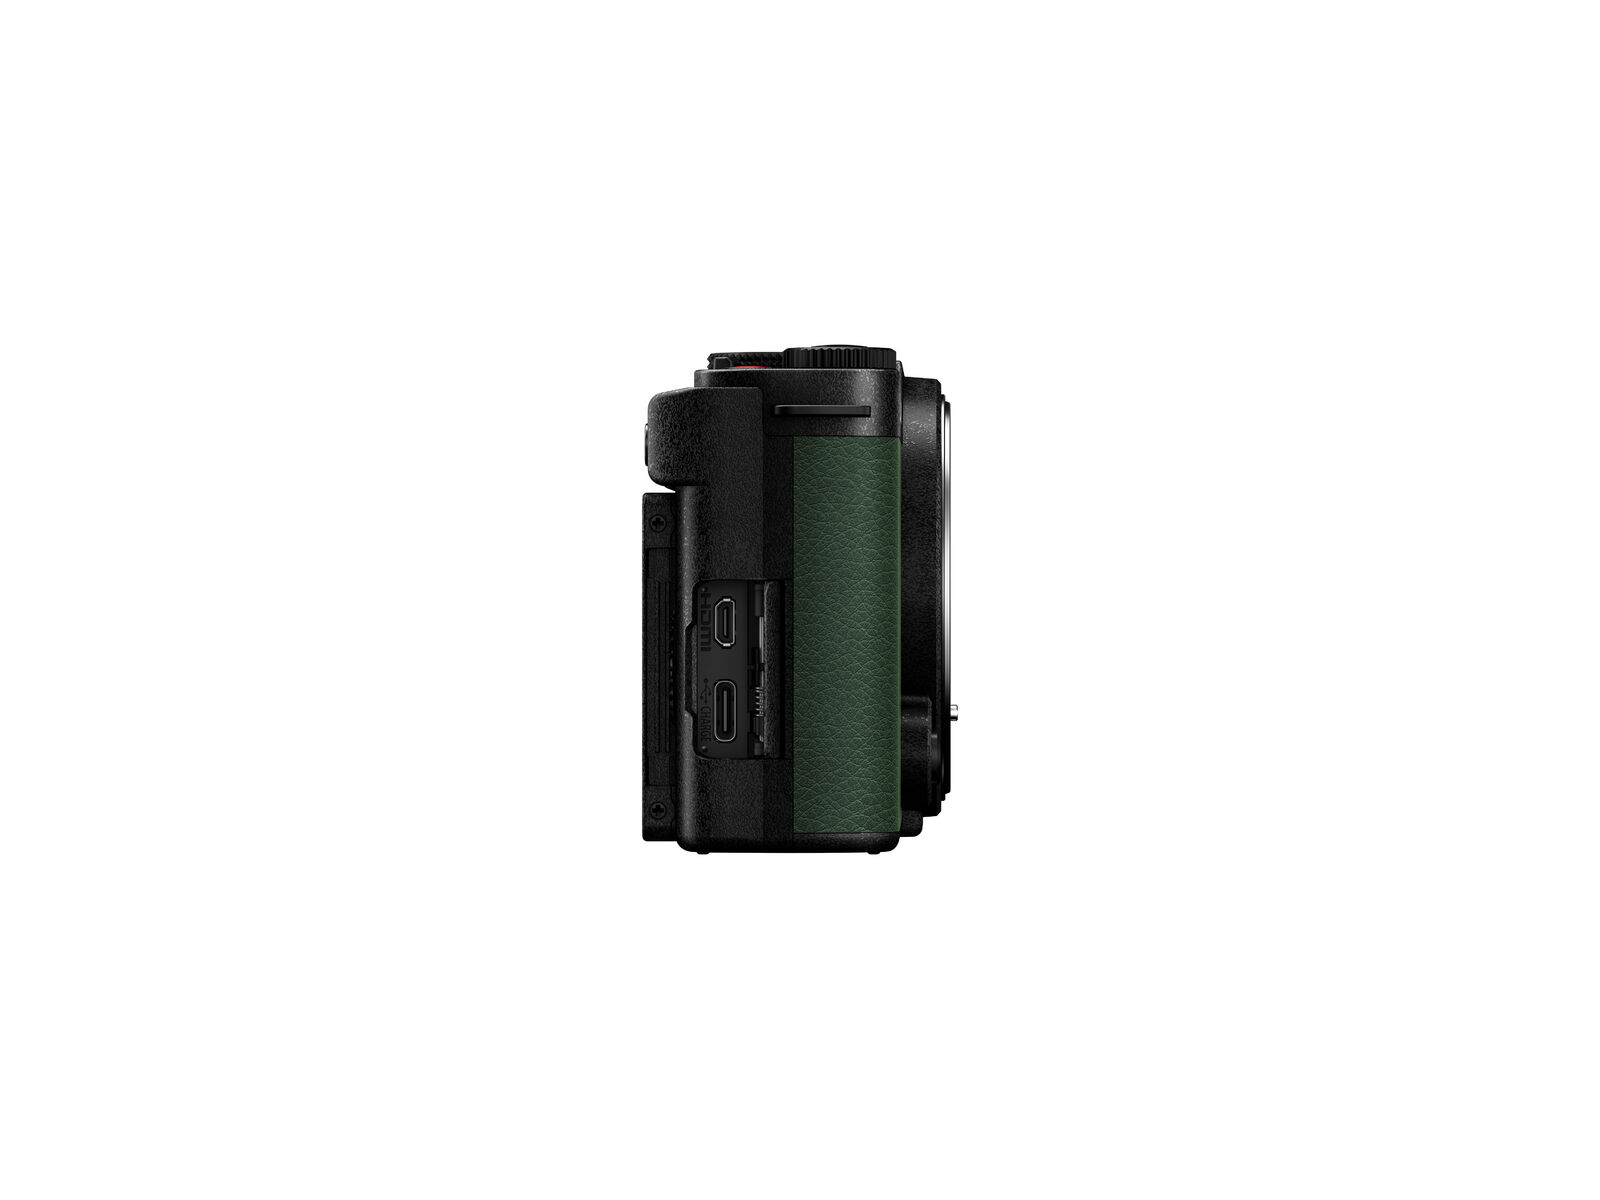 1022720_B.jpg - Panasonic Lumix S9 Mirrorless Camera Body Only - Dark Olive Green